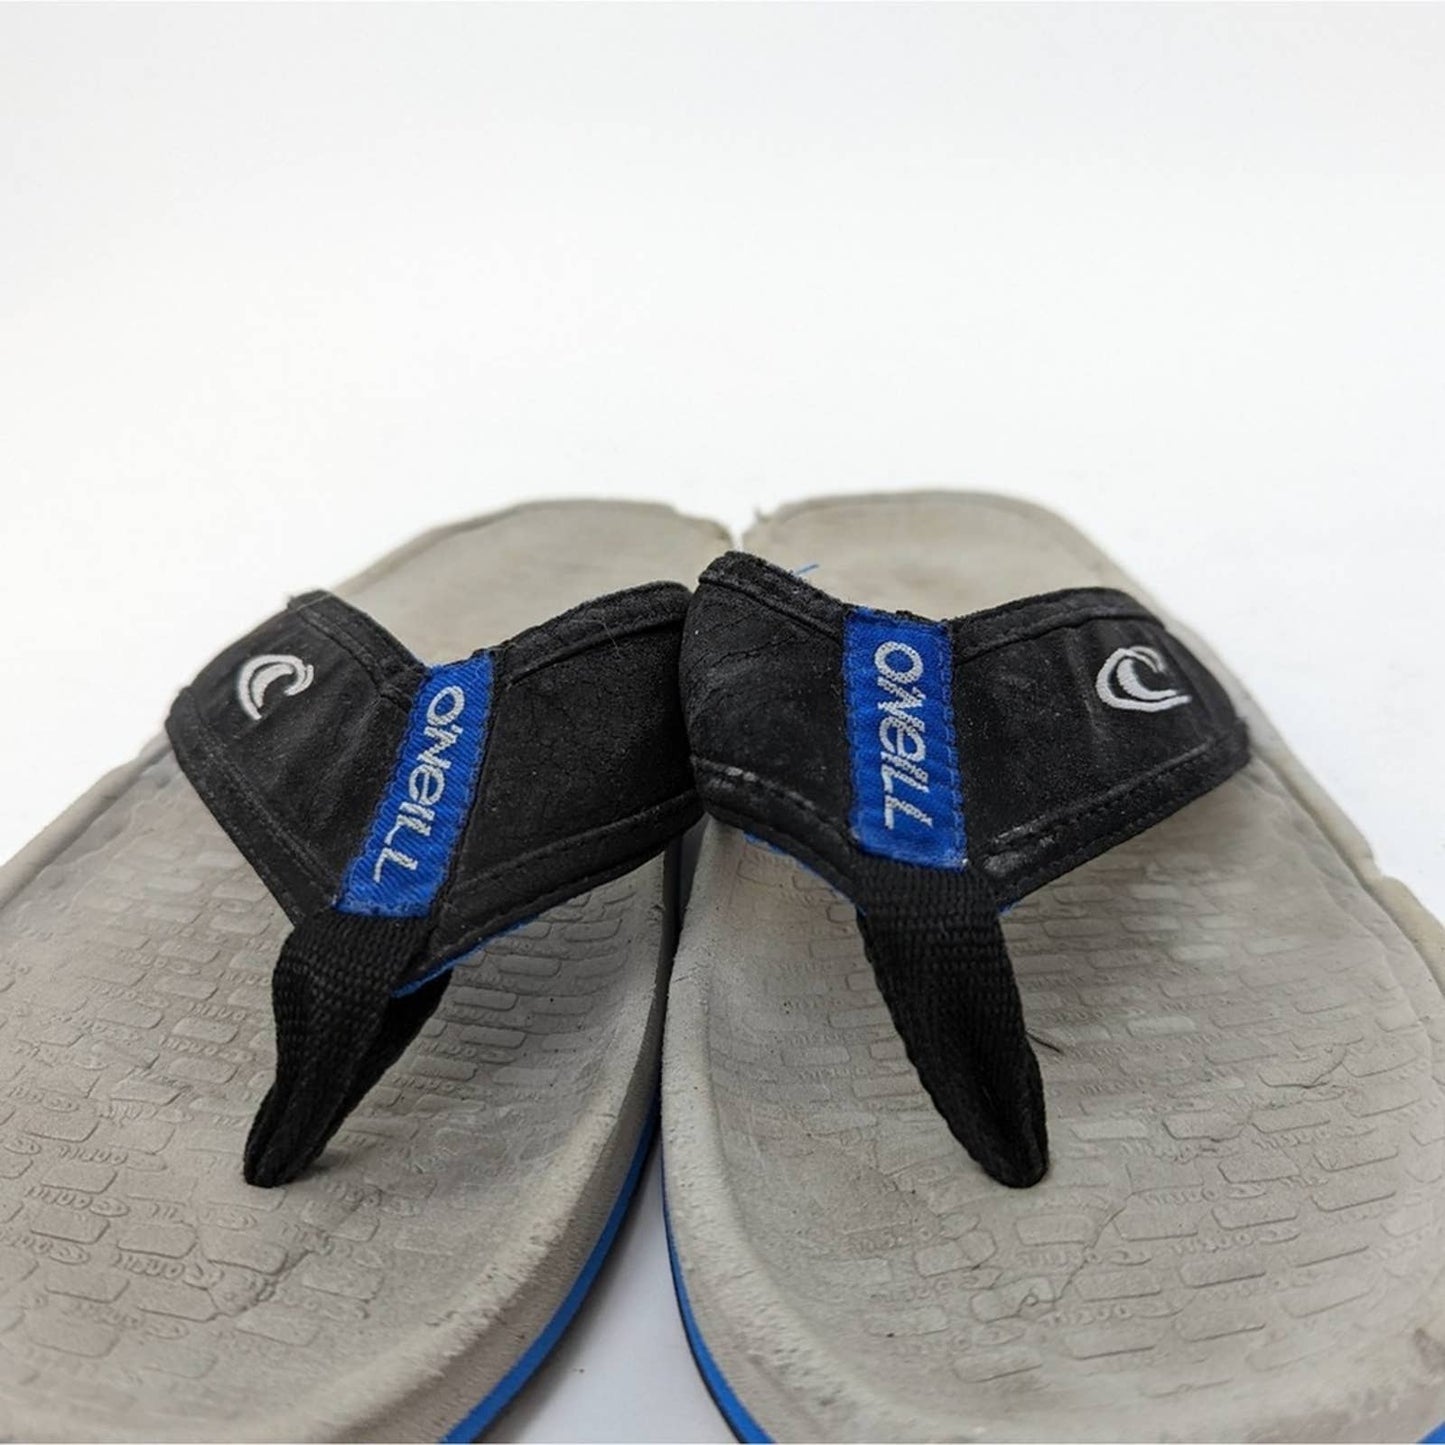 O’Neill Imprint Flip Flop Sandals - 9